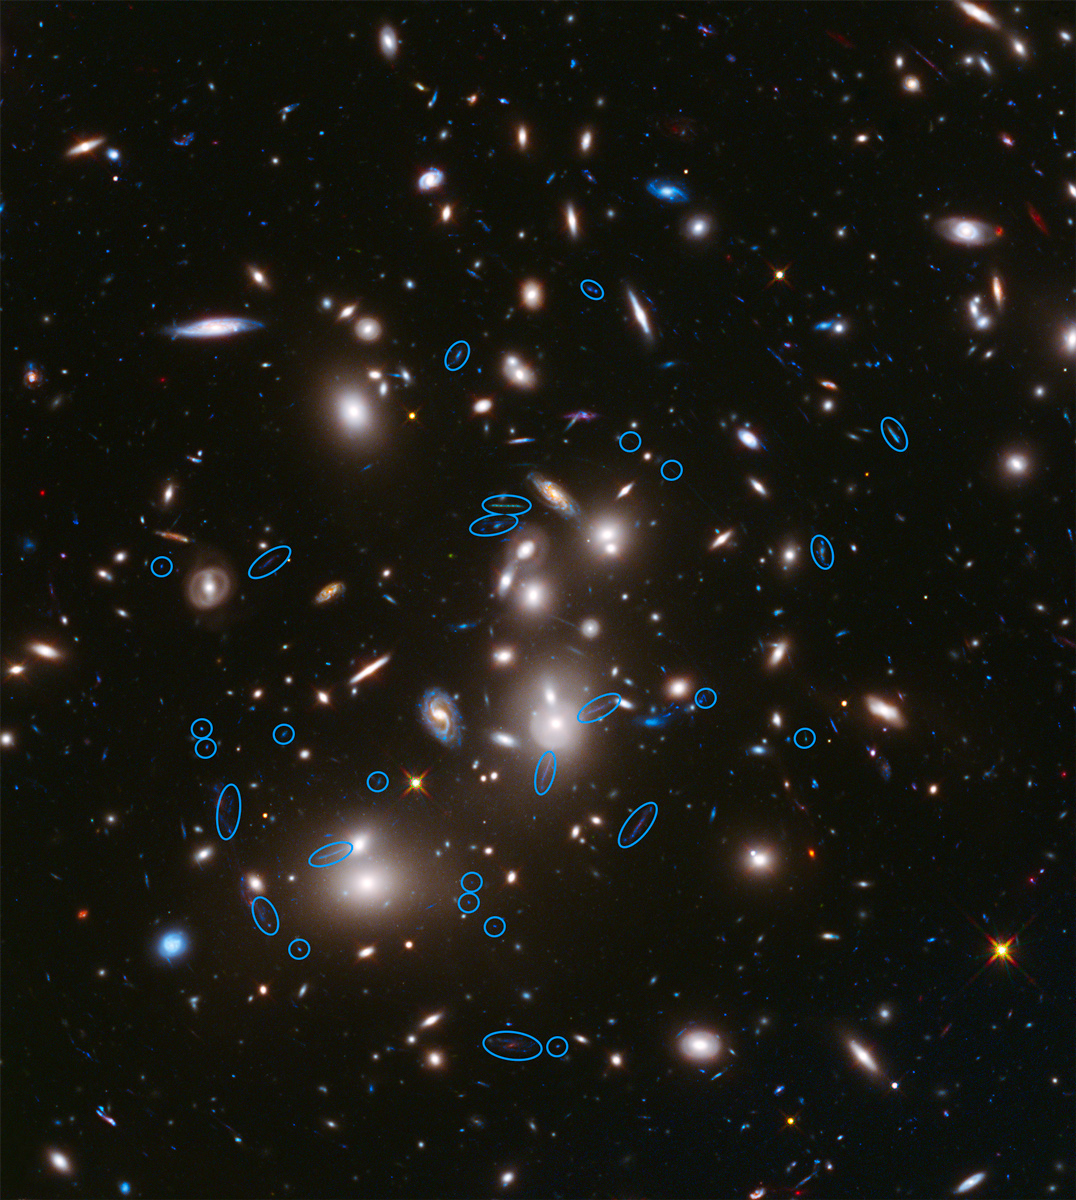 تصویر ۱: تصویر خوشه کهکشانی آبِل ۲۷۴۴، یکی از میدانهای مورد هدف پروژه میدانهای مرزی. کهکشانهای پرنور میانه تصویر، اعضای اصلی خوشه کهکشانی هستند. این کهکشانهای پرجرم، مانند یک عدسی، نور رسیده از کهکشانهای پشتشان را همگرا می‌کنند. اجرامی که دورشان خط آبی کشیده شده است، از جمله کهکشانهایی هستند که نورشان تحت تاثیر عدسی گرانشی قرار گرفته است. اگر دقت کنید، می‌بینید که شکل آنها کشیده شده است. در برنامه «میدانهای مرزی»، قرار است قدرت رصدی هابل و اسپیتزر، با این عدسی‌های کهکشانی عظیم ترکیب شود و به سراغ کشف دورترین مرزهای کیهان بروند. Credit: NASA, ESA, and R. Dupke (Eureka Scientific, Inc.), et al.